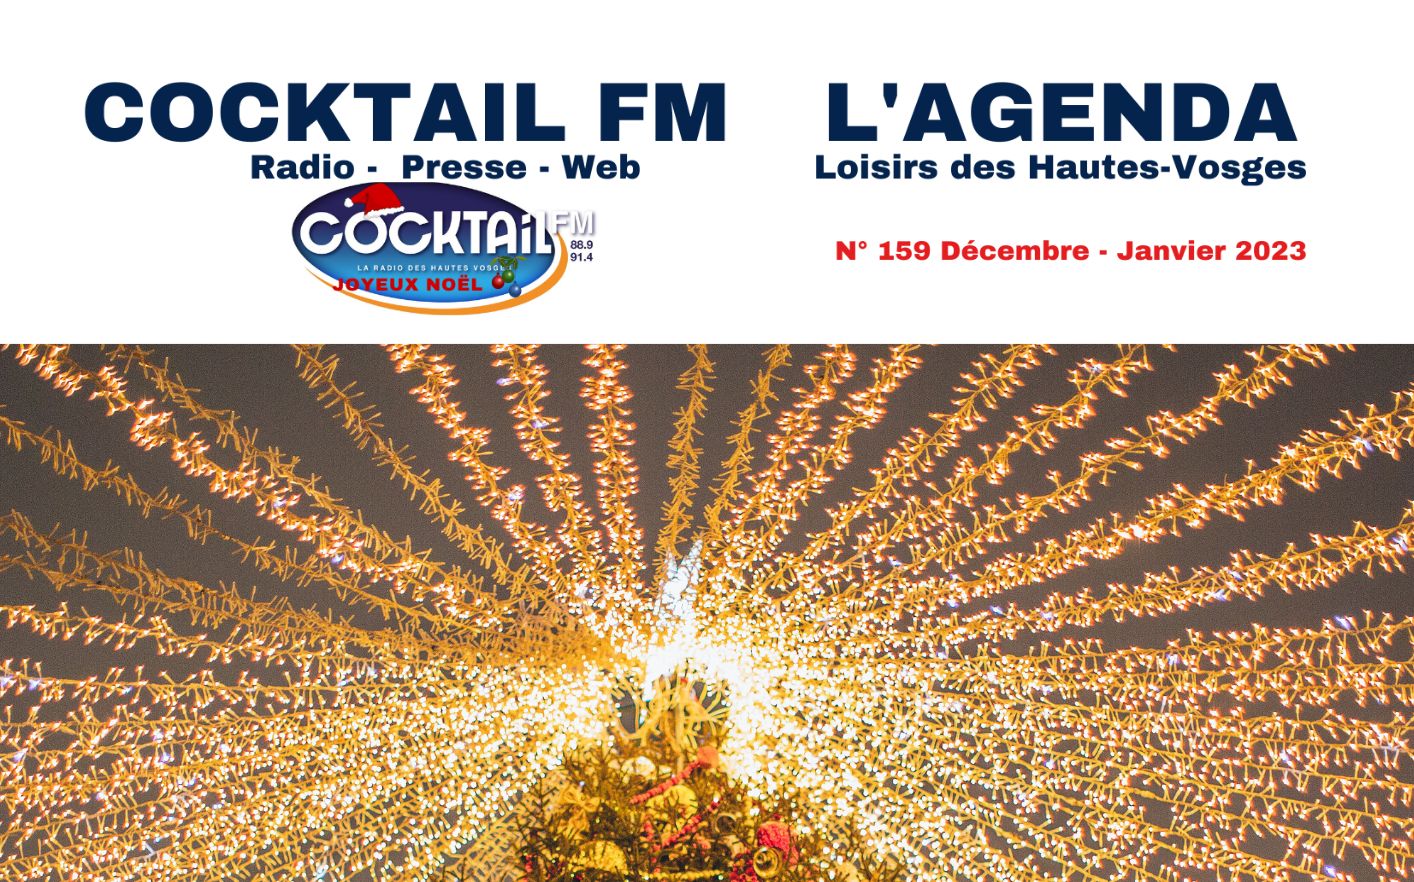 COCKTAIL FM L'AGENDA LOISIRS DES HAUTES VOSGES DEC 2022 JAN 2023